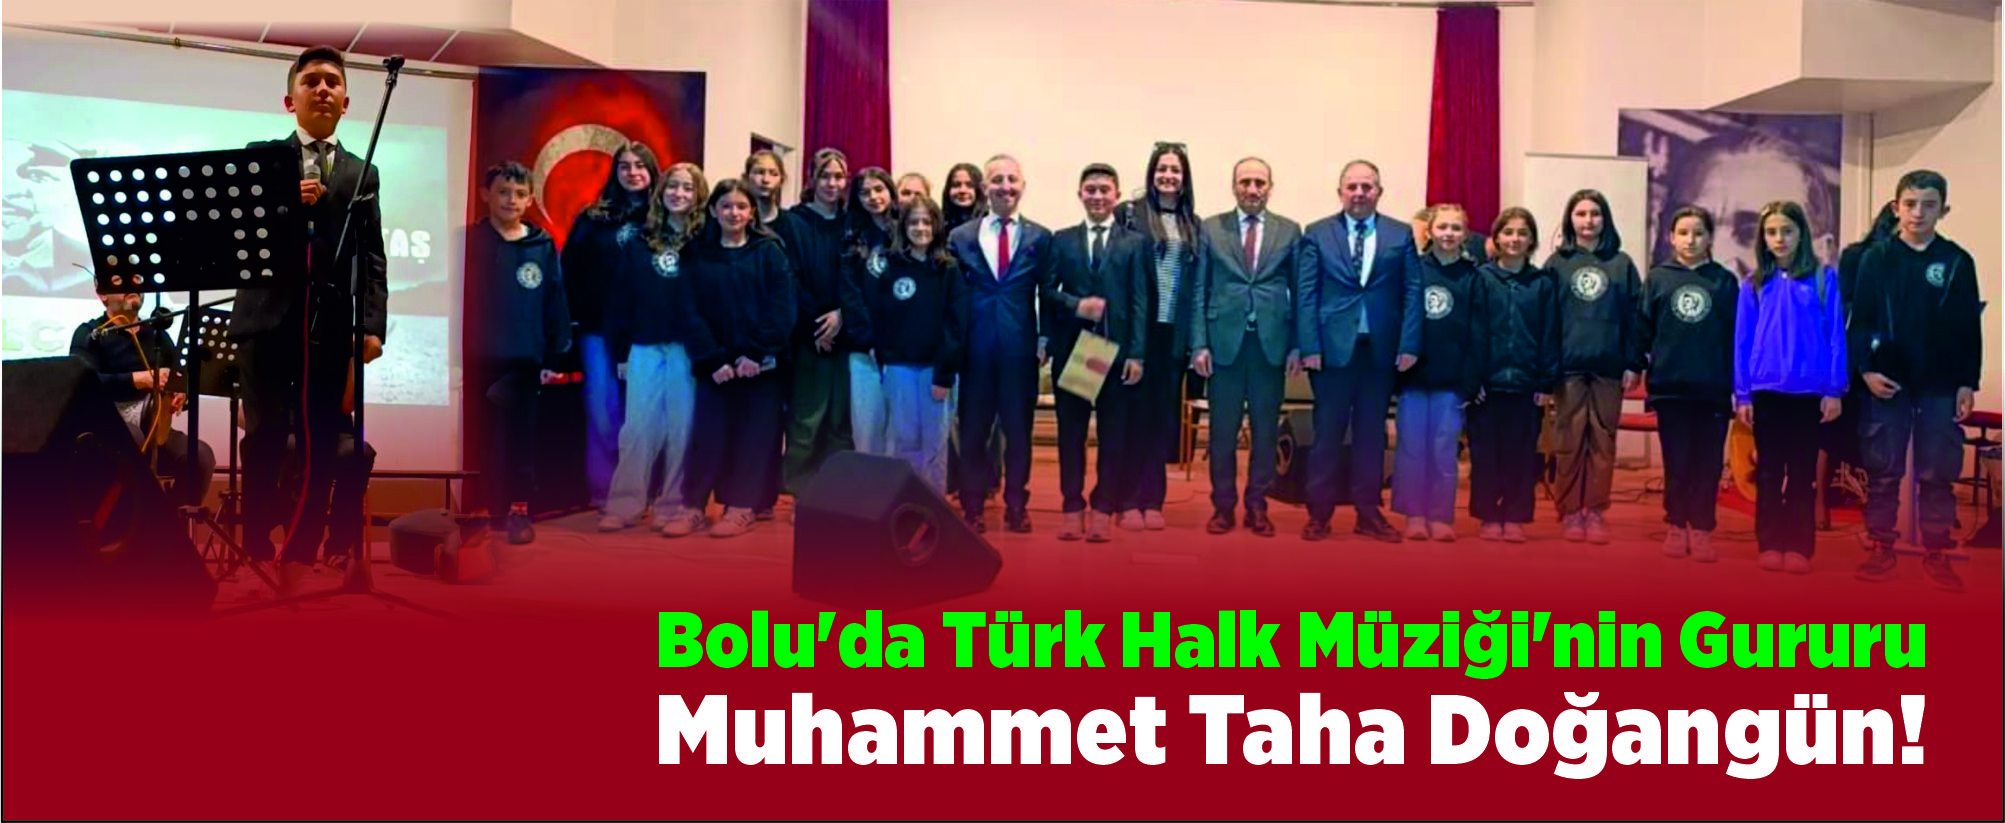 Türk halk müziği solo etkinliğinde il birincisiyiz